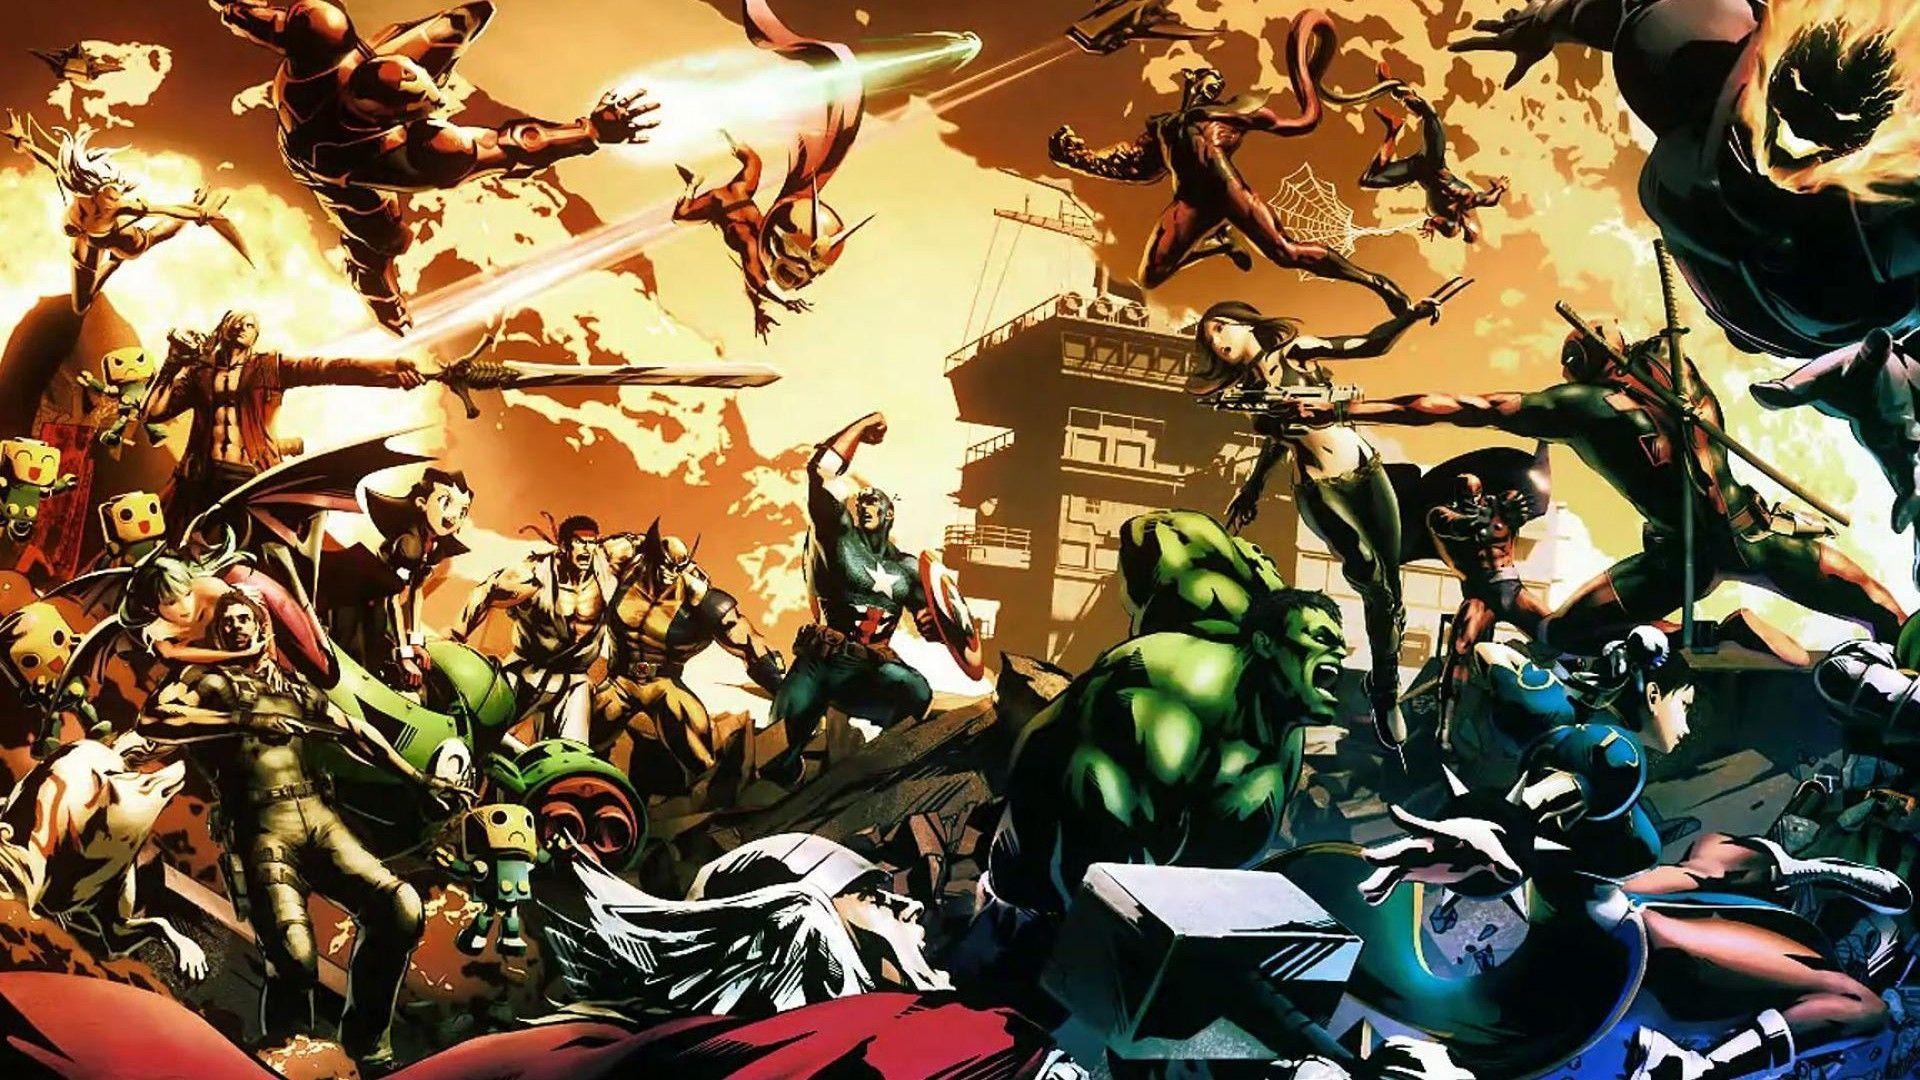 Marvel vs Capcom 3 wallpaper. Cool HD wallpaper for desktop